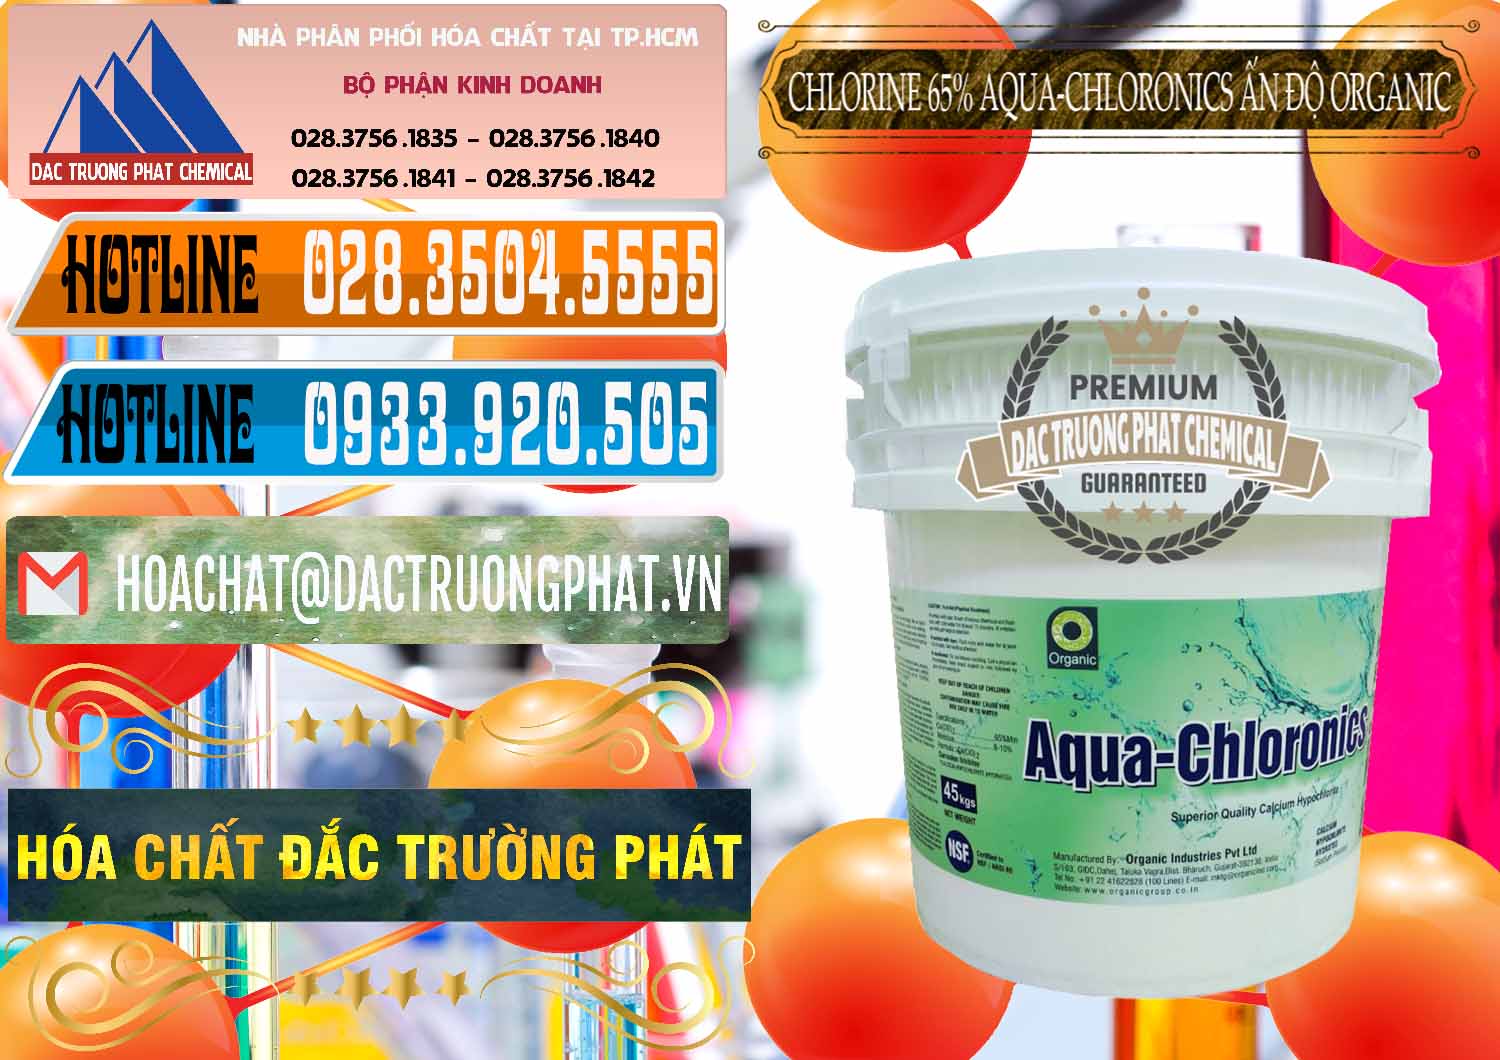 Công ty bán - cung cấp Chlorine – Clorin 65% Aqua-Chloronics Ấn Độ Organic India - 0210 - Cty chuyên phân phối & nhập khẩu hóa chất tại TP.HCM - stmp.net